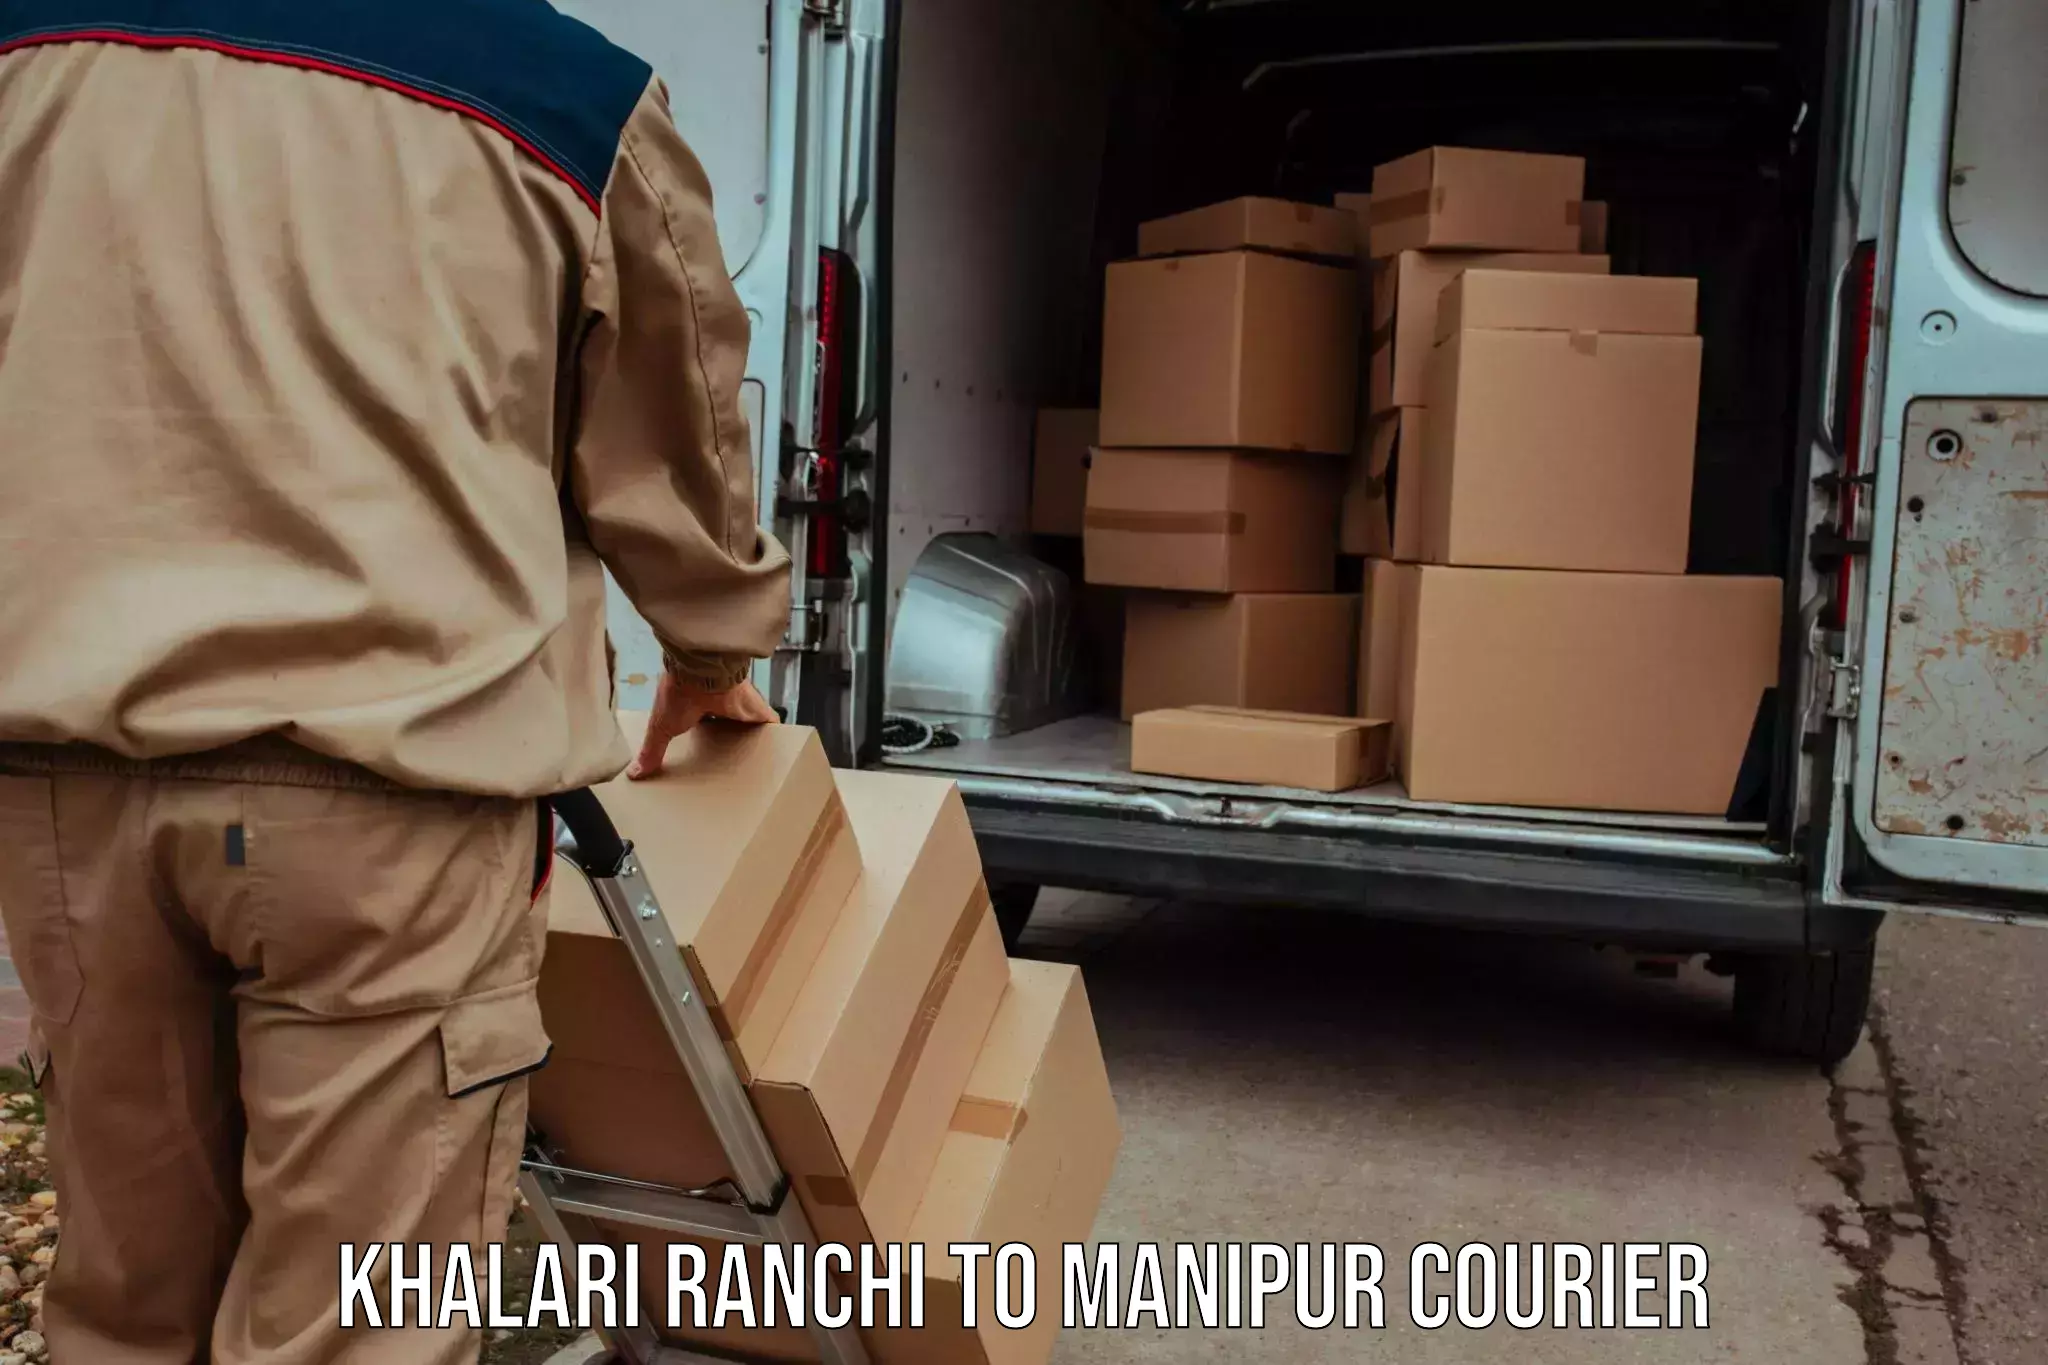 Cross-border shipping Khalari Ranchi to Imphal